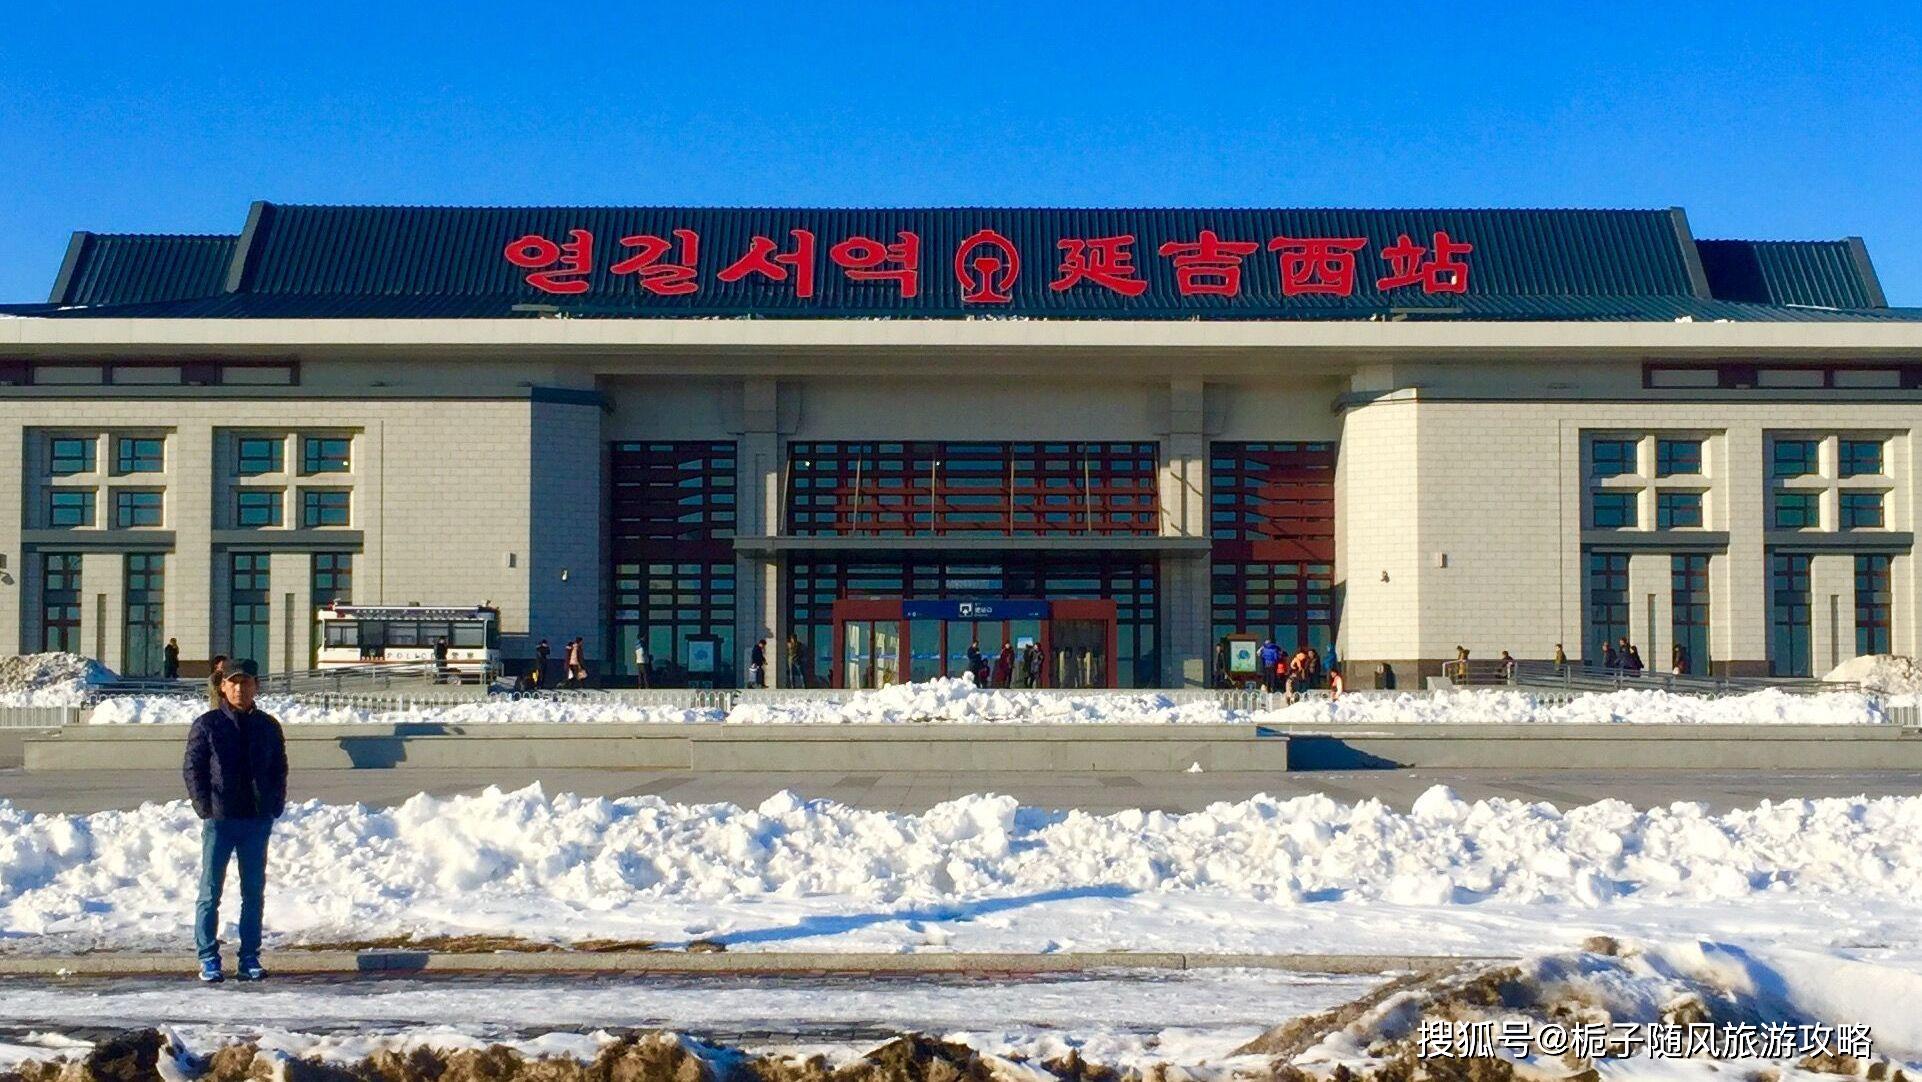 延吉西站位于吉林省延吉市朝阳川镇境内,是长珲城际铁路延边州境内最